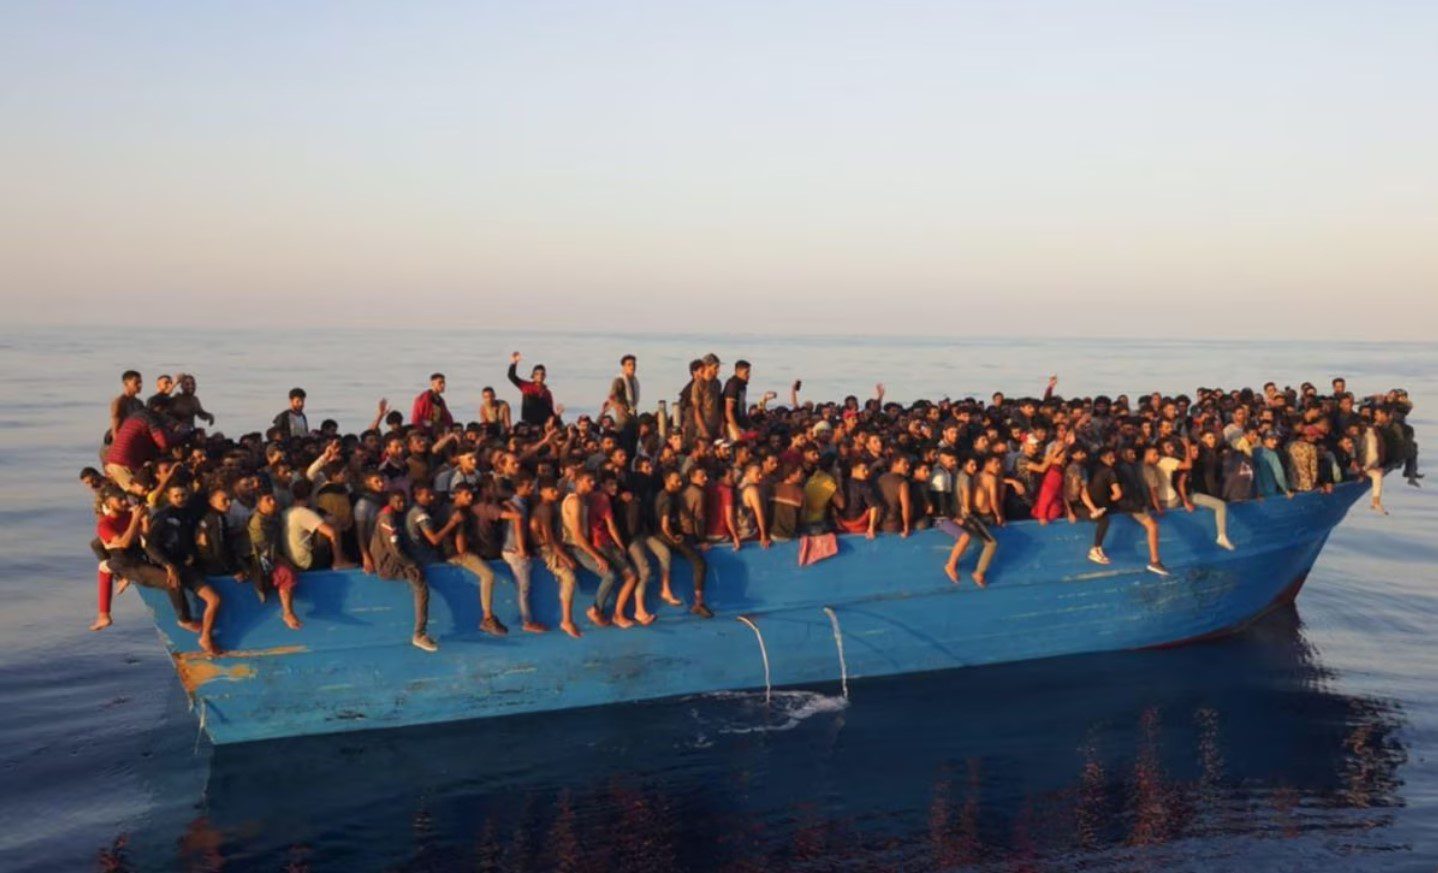 [Video] El país europeo que vive una crisis de migrantes